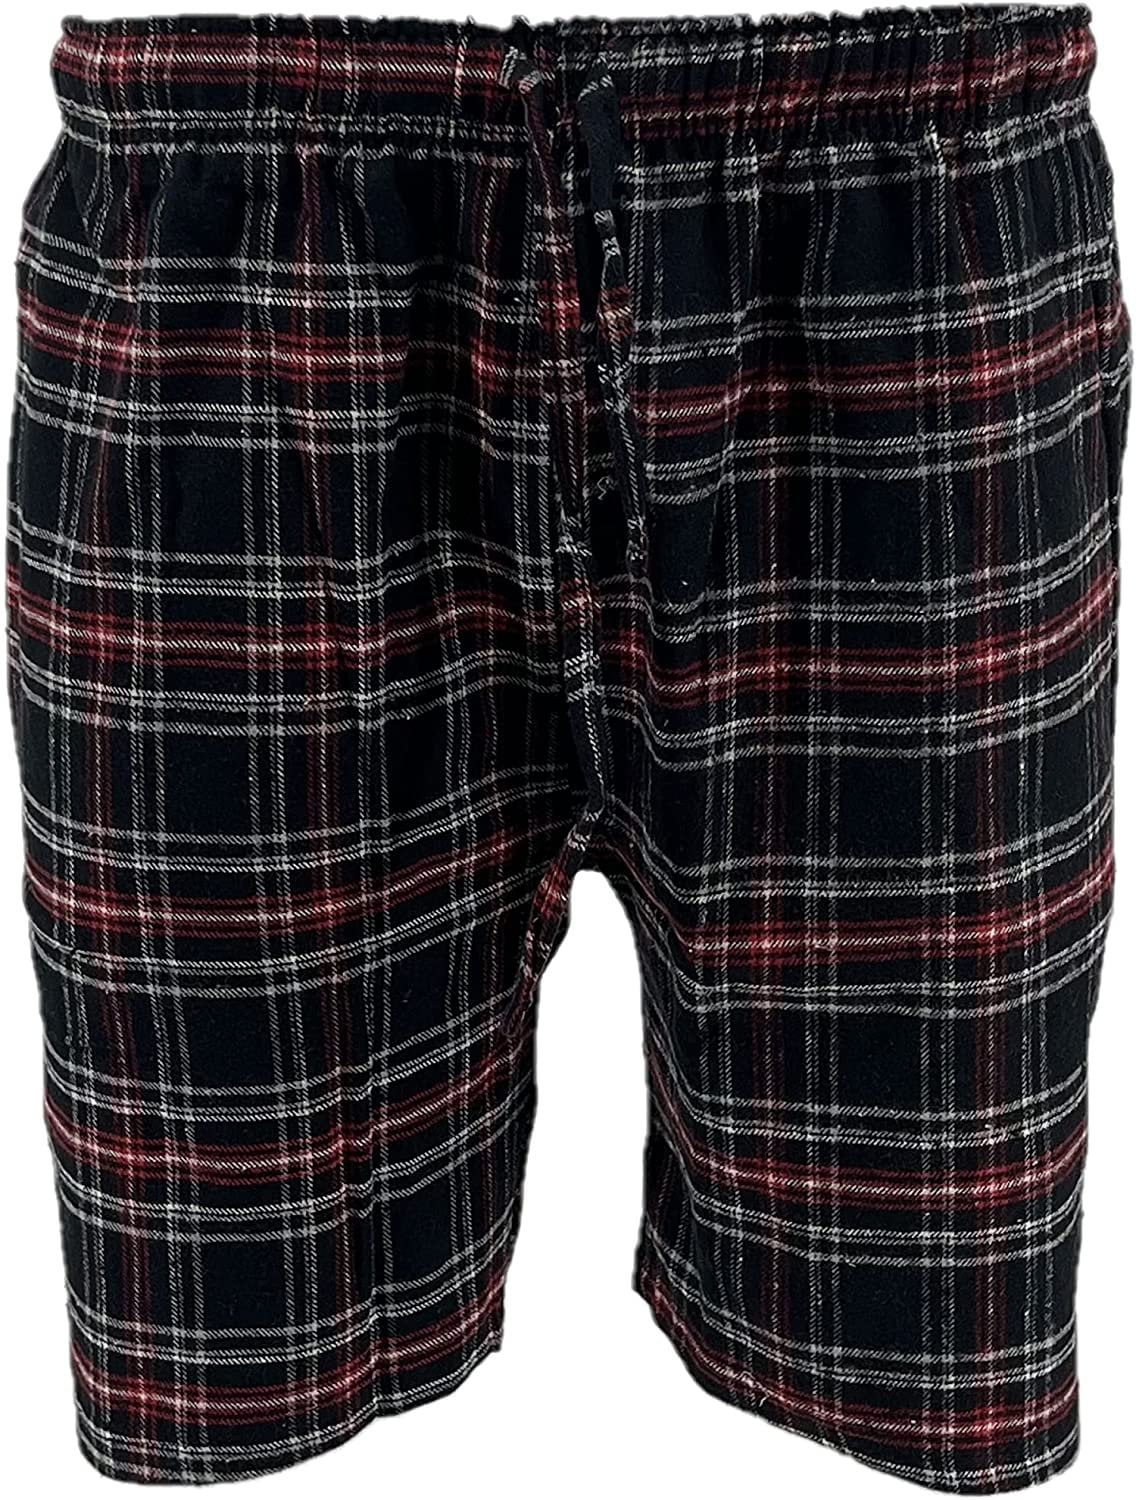 ONTBYB Mens Plaid Soft Cotton Sleep Lounge Pajama Shorts 